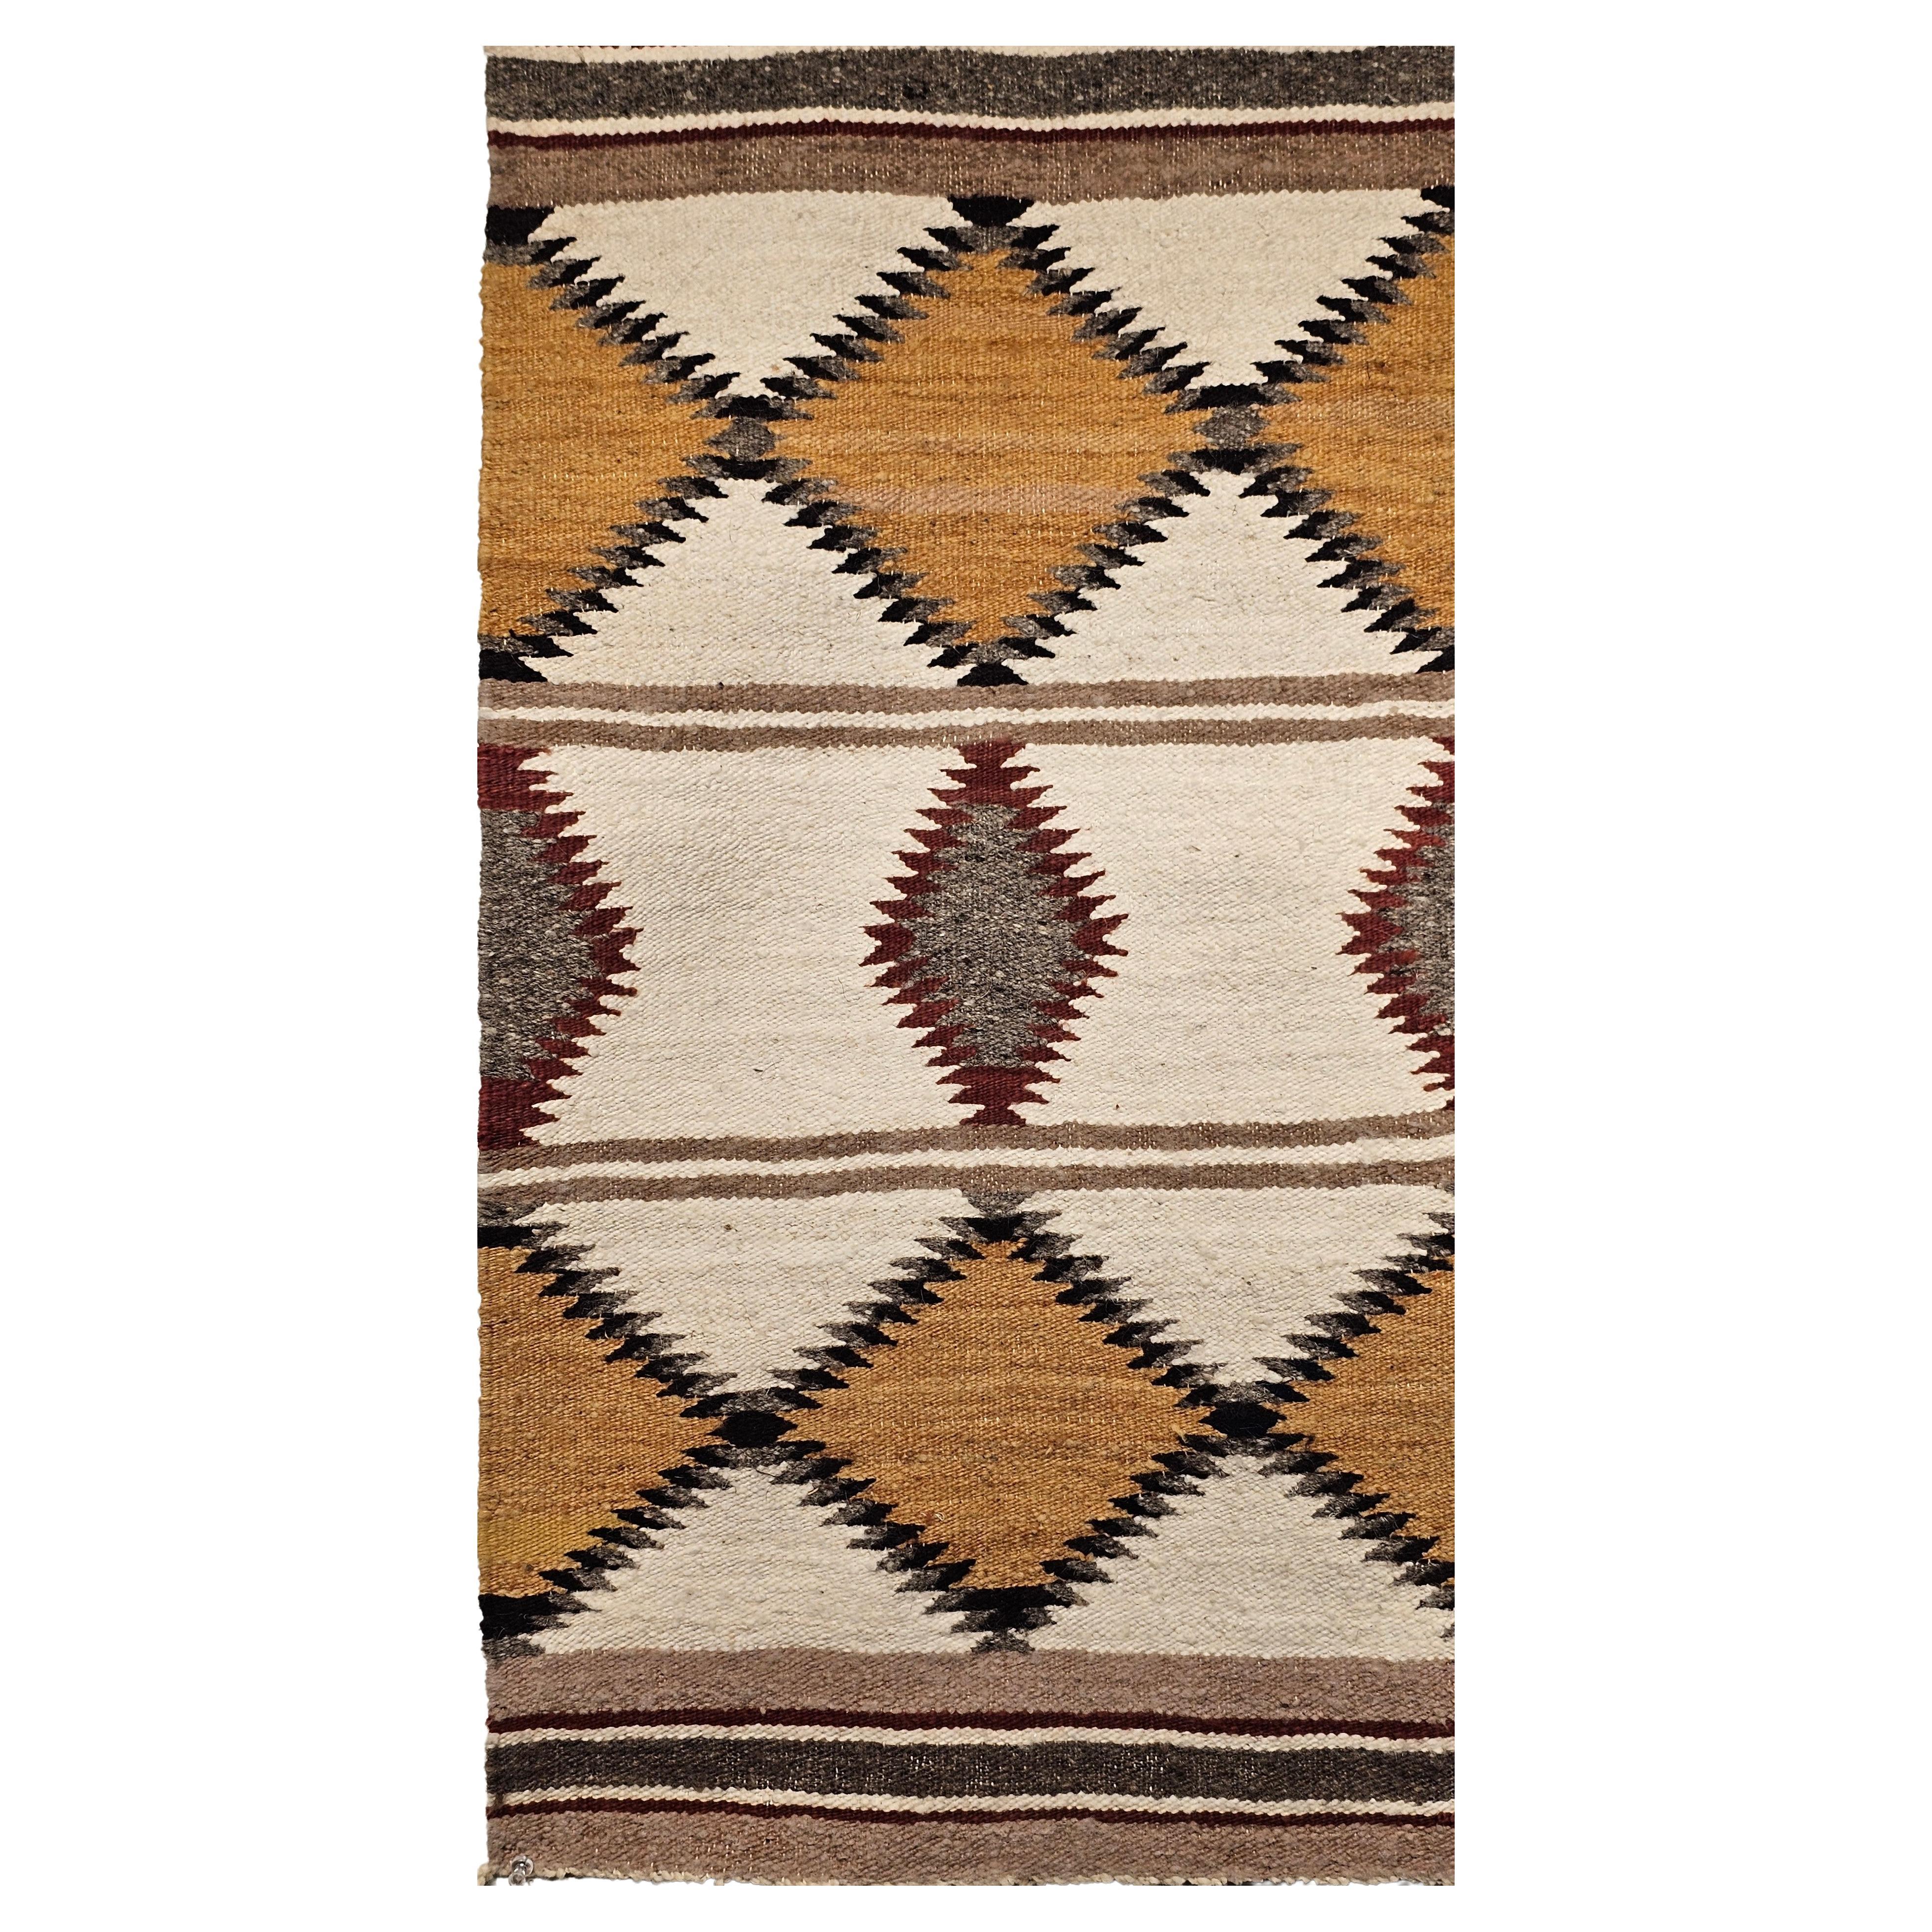 Vintage Navajo-Teppich in Elfenbein, Grau, Braun und Schwarz